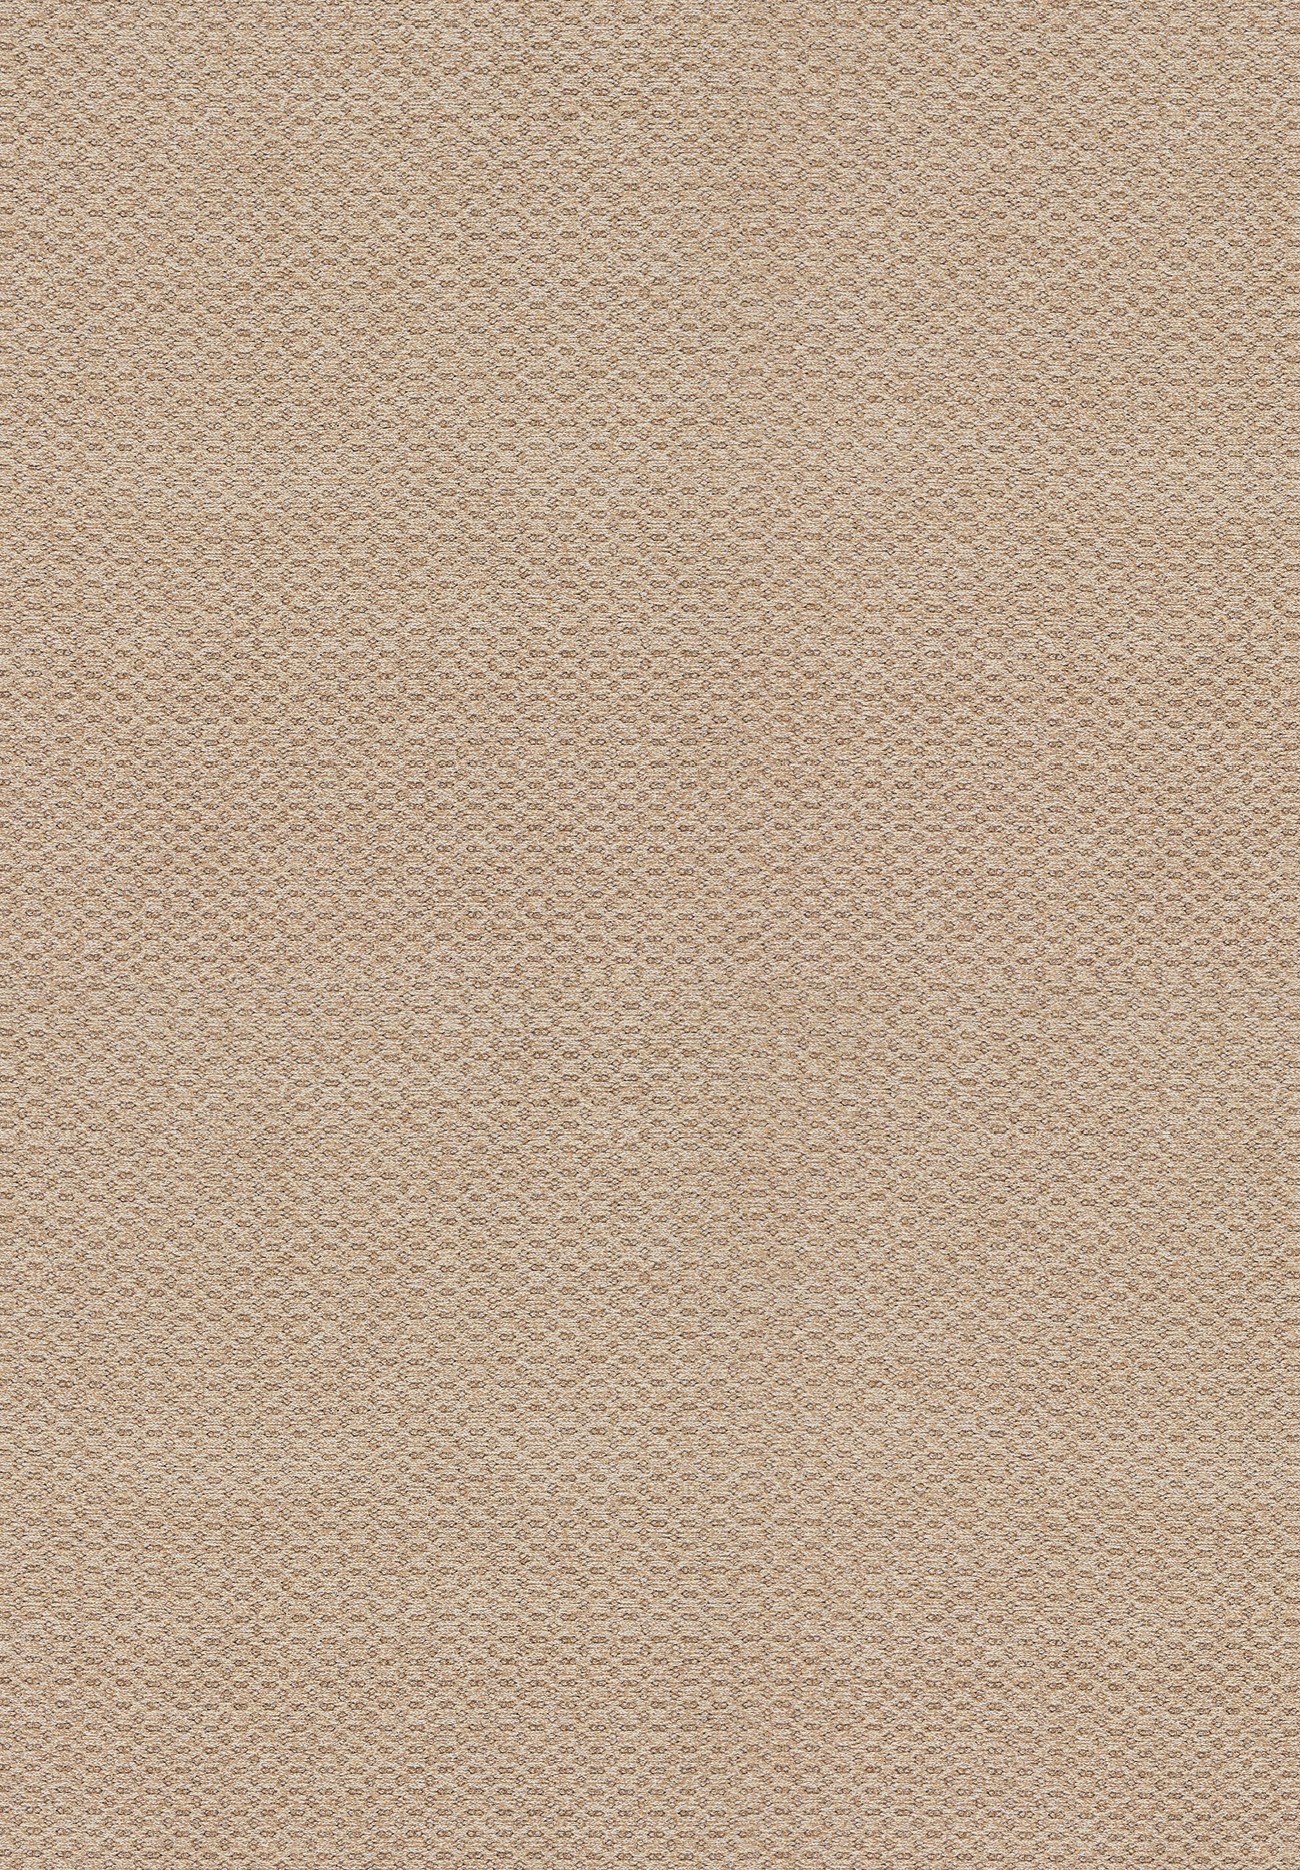 Poliform_outdoor_carpet_KAMIR_1300x1740px_corda